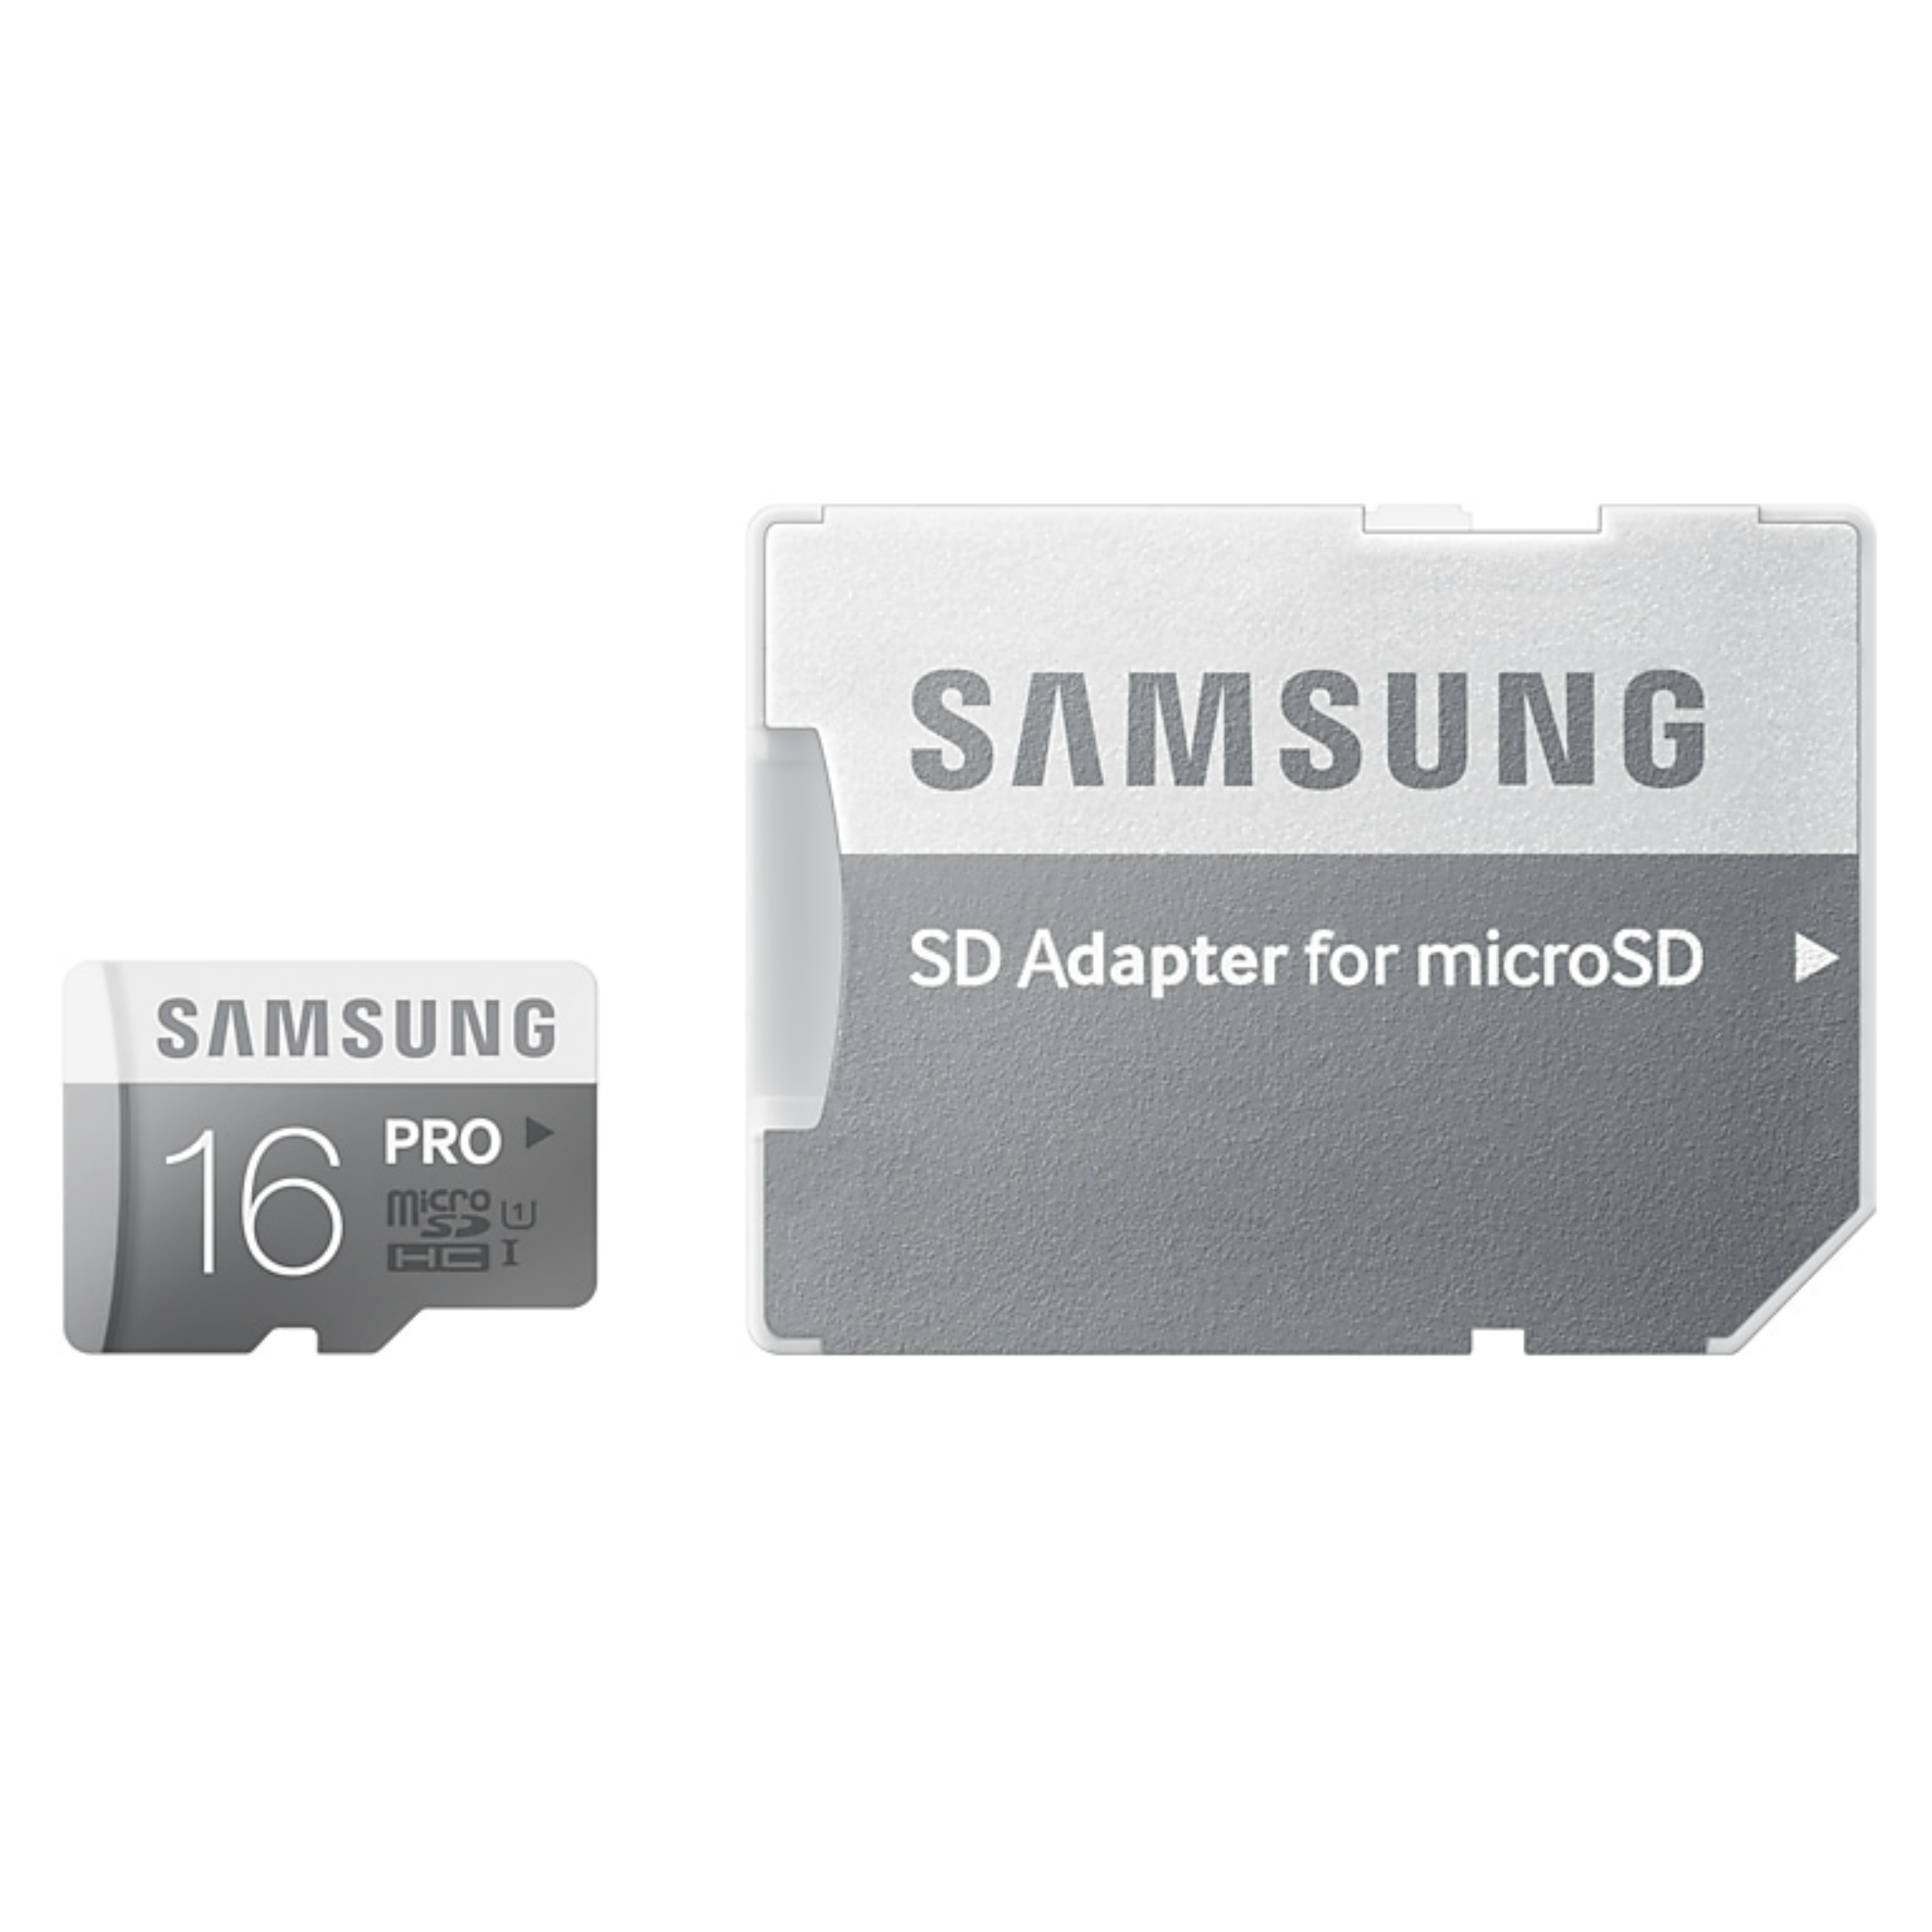 نقد و بررسی کارت حافظه microSDHC مدل Pro کلاس 10 استاندارد UHS-I U1 سرعت 90MBps ظرفیت 16 گیگابایت به همراه آداپتور SD توسط خریداران